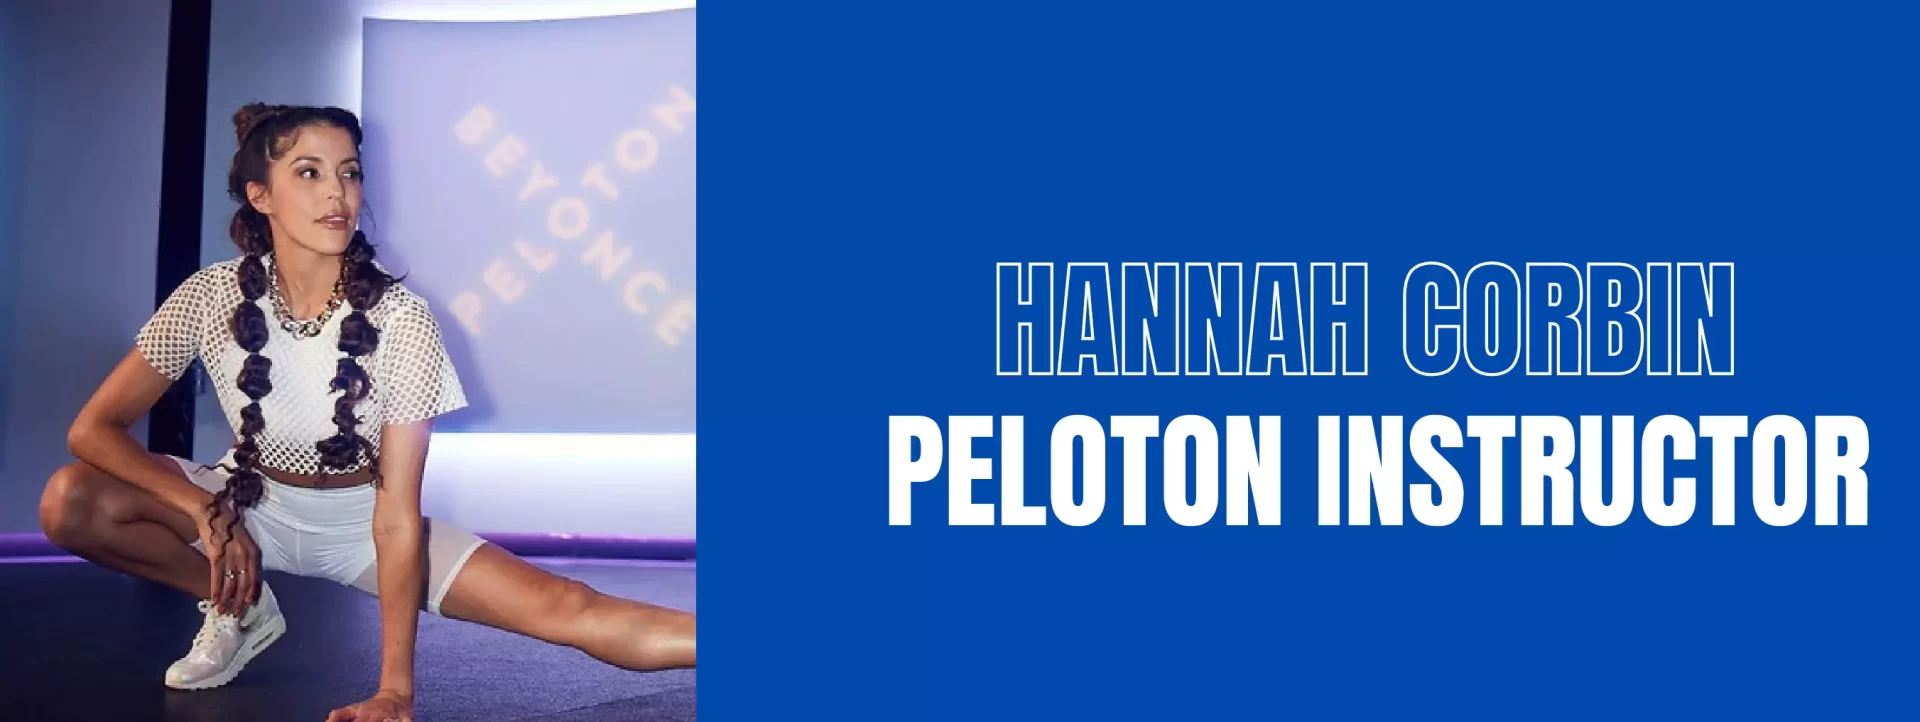 Hannah Corbin Peloton Instructor